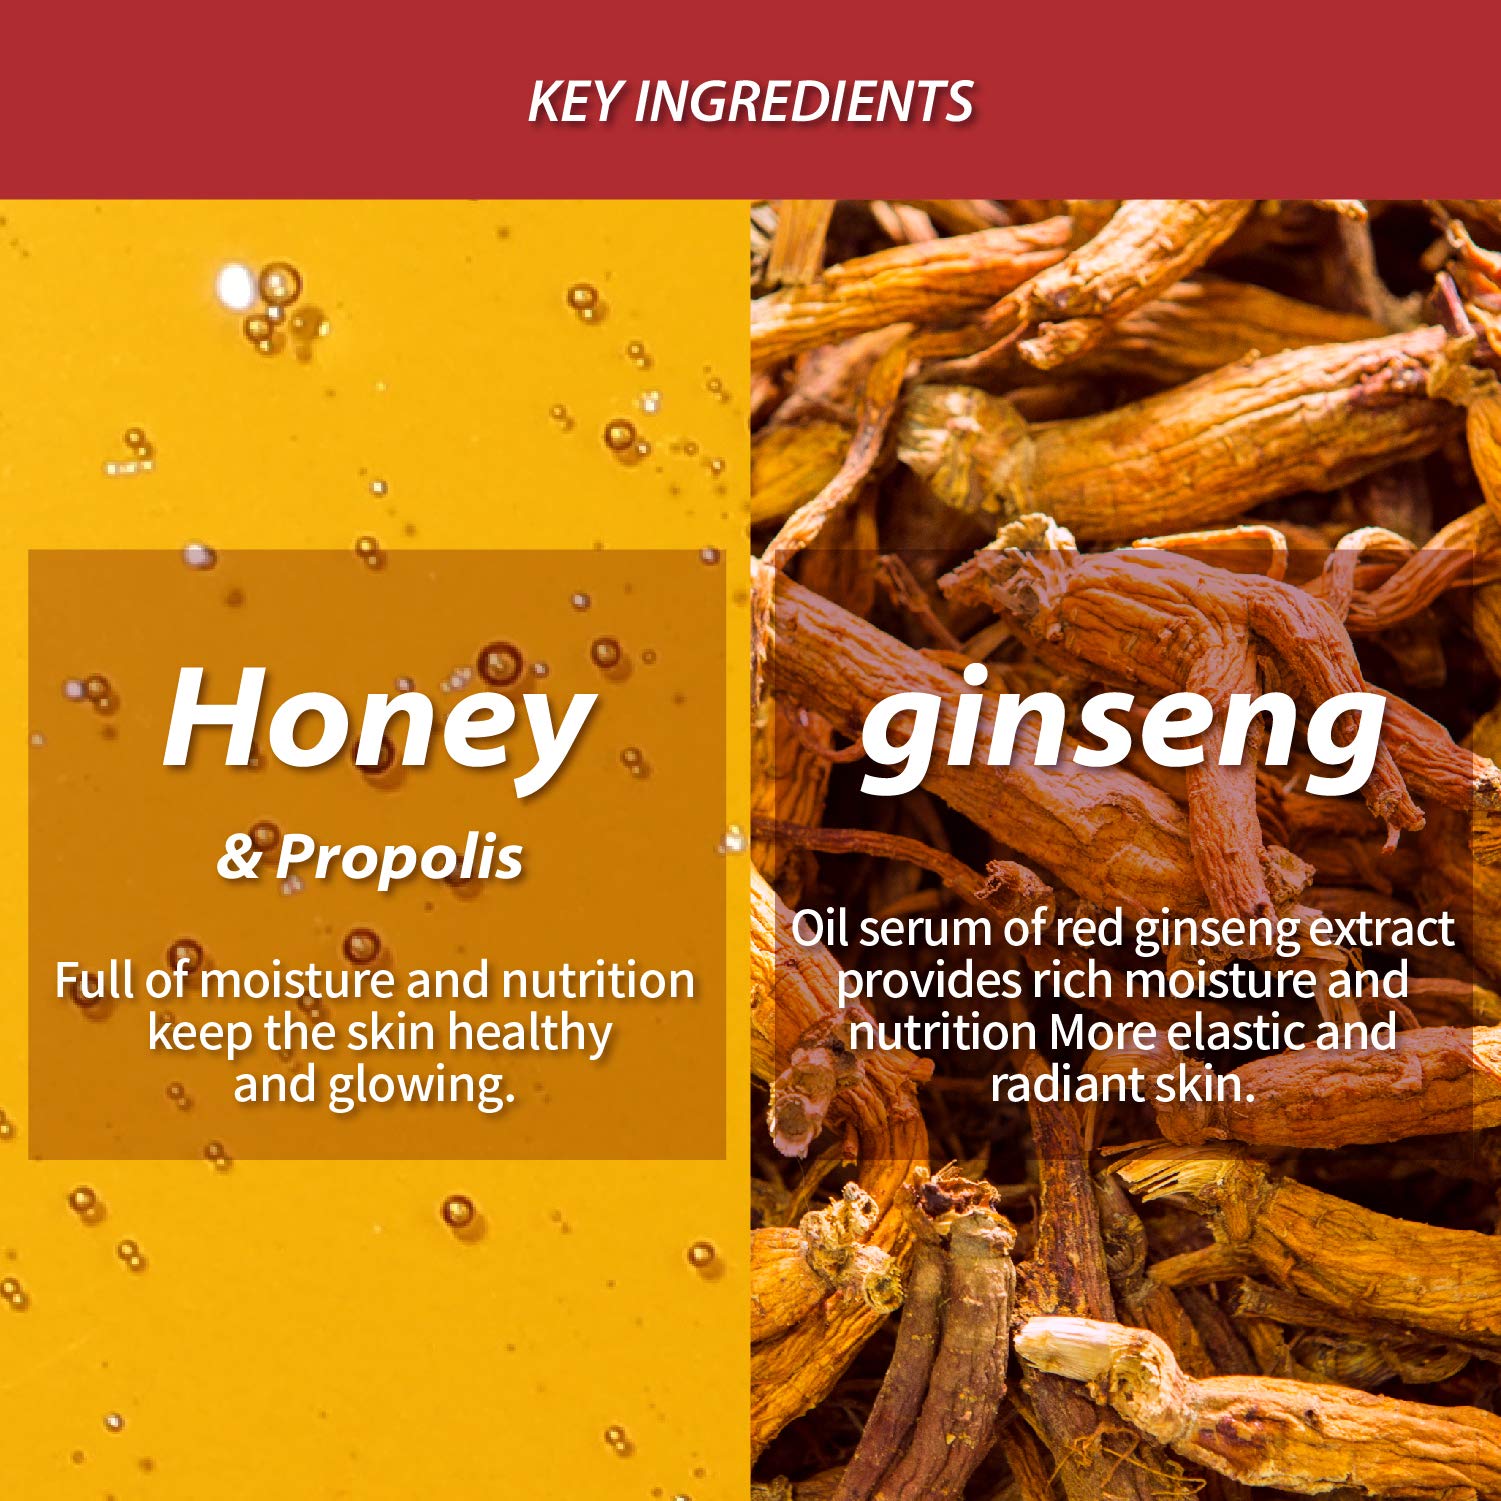 Papa Recipe Chunyu Red Ginseng Essential Oil Honey Mask 20g*10Pcs 春雨春雨红参精油蜂蜜面膜